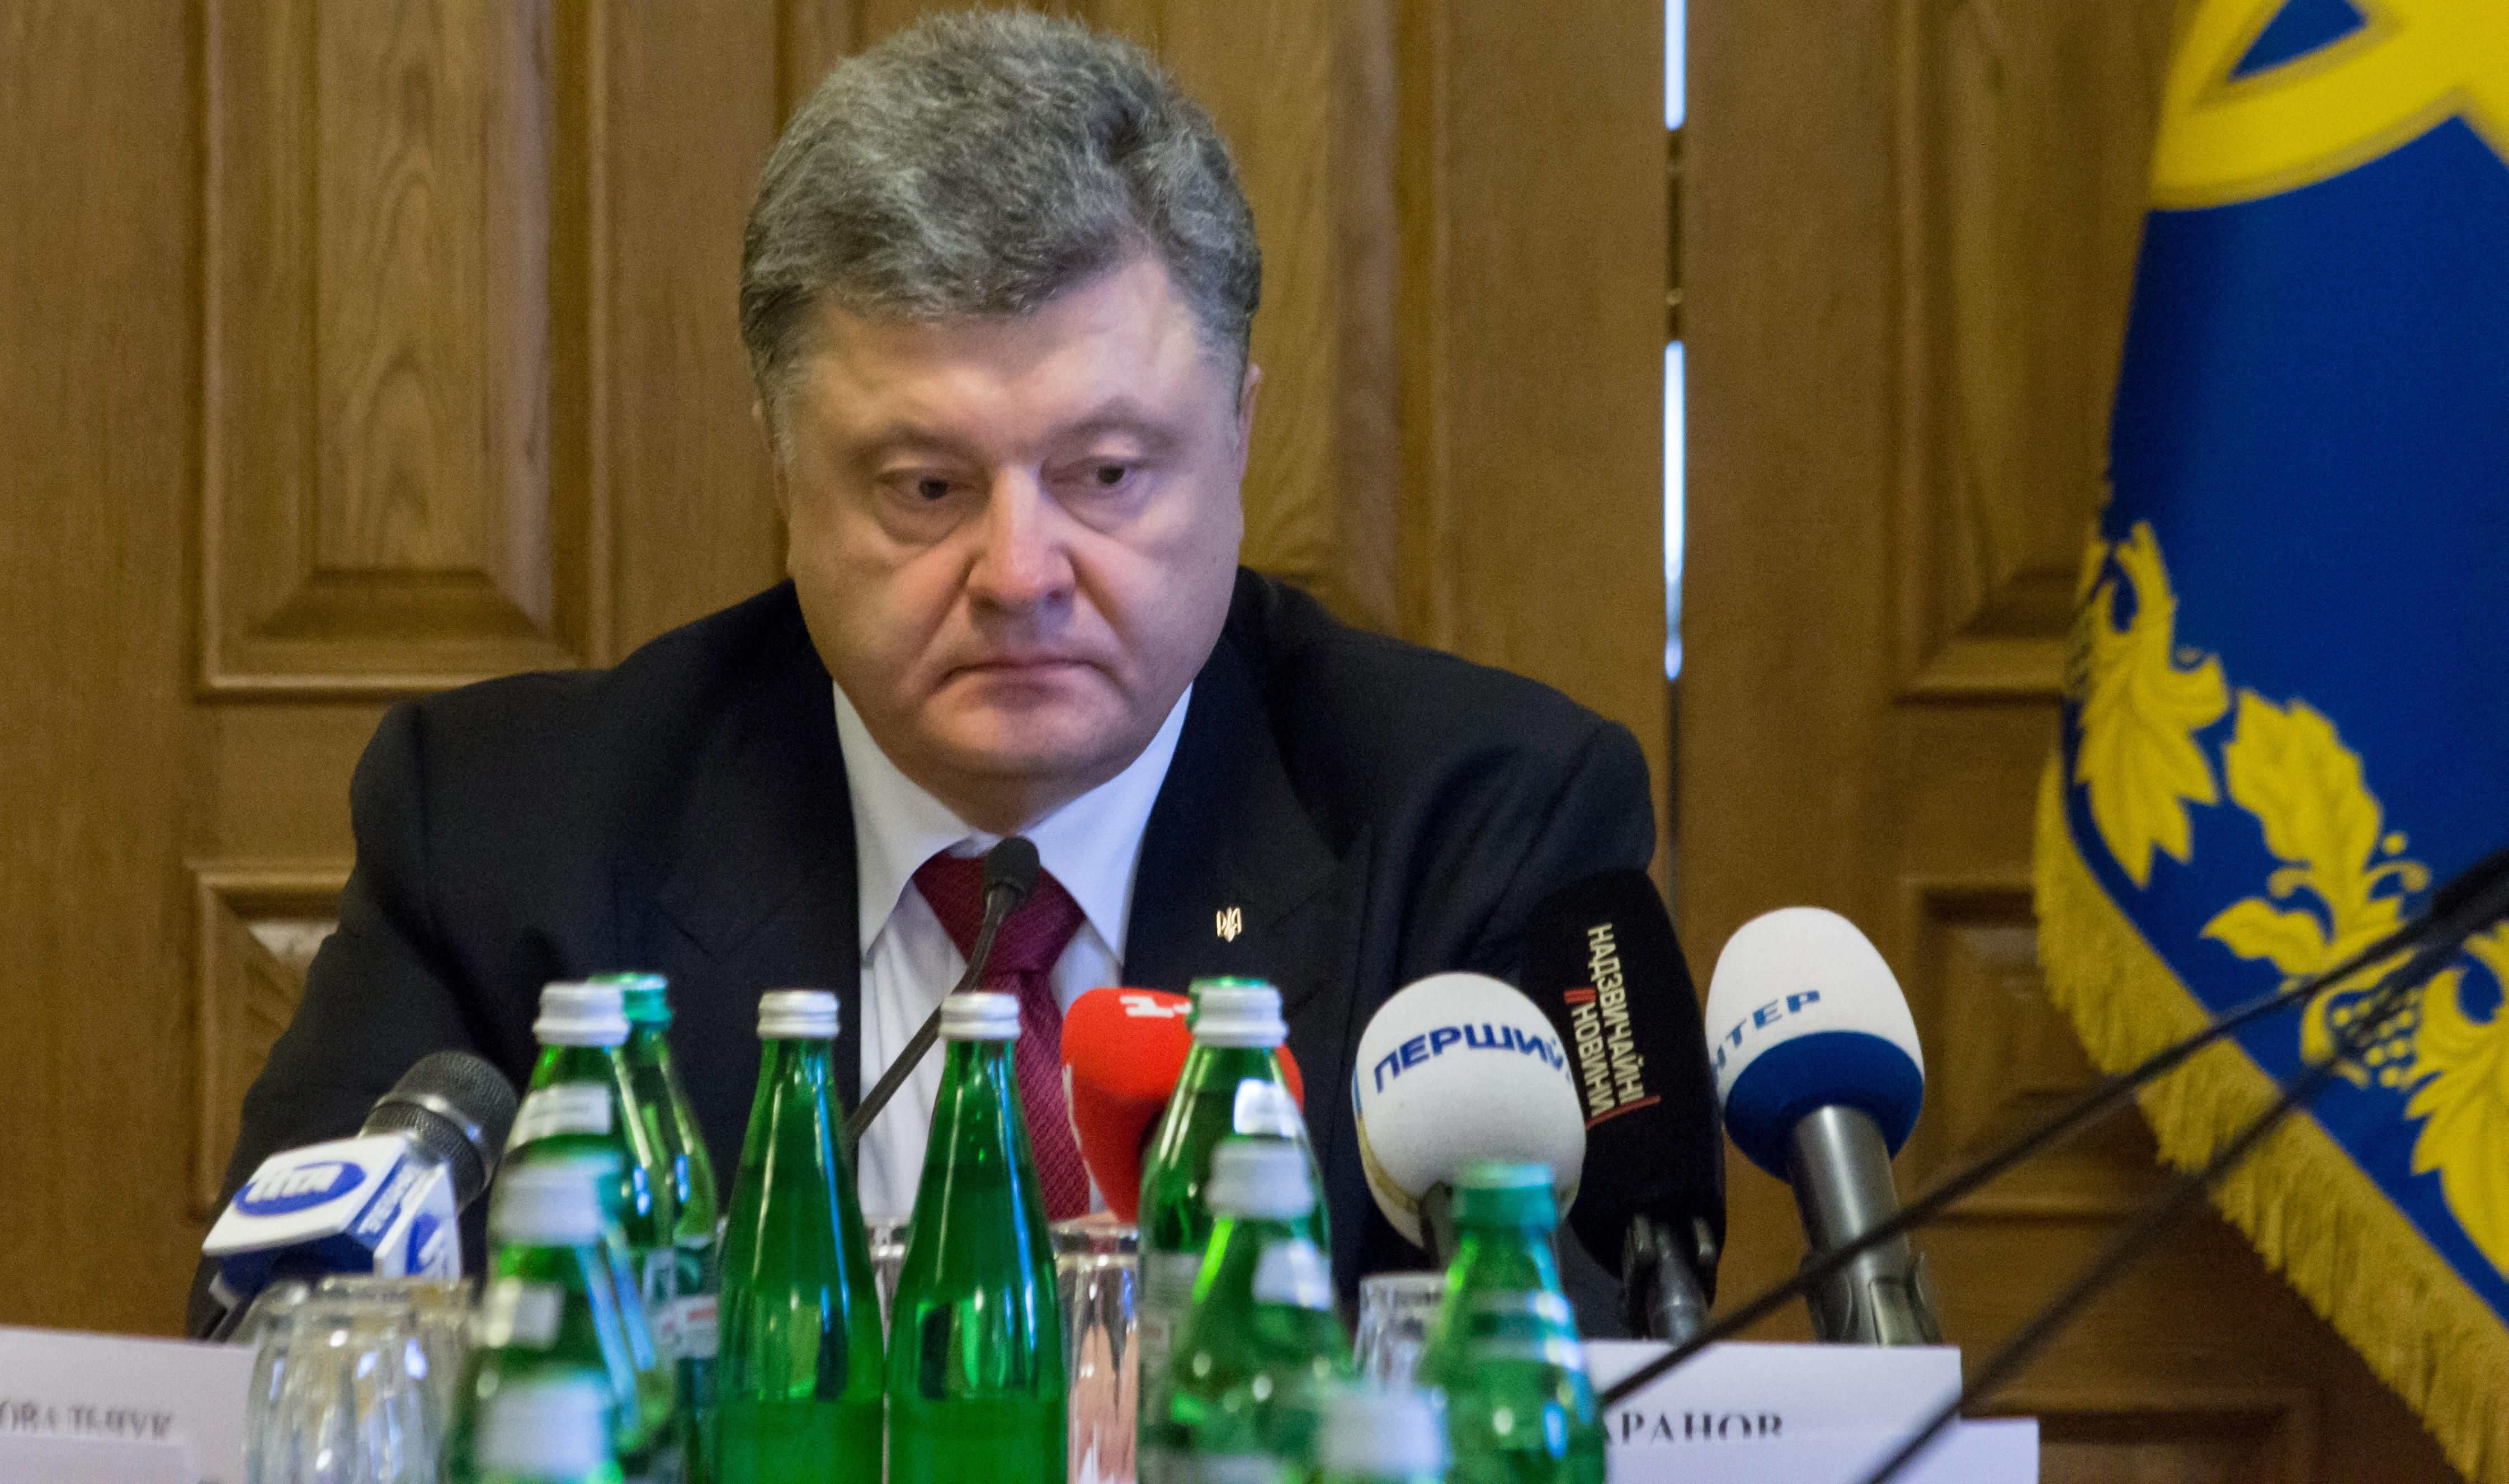 Порошенко прокомментировал трагическую перестрелку с участием полиции под Киевом